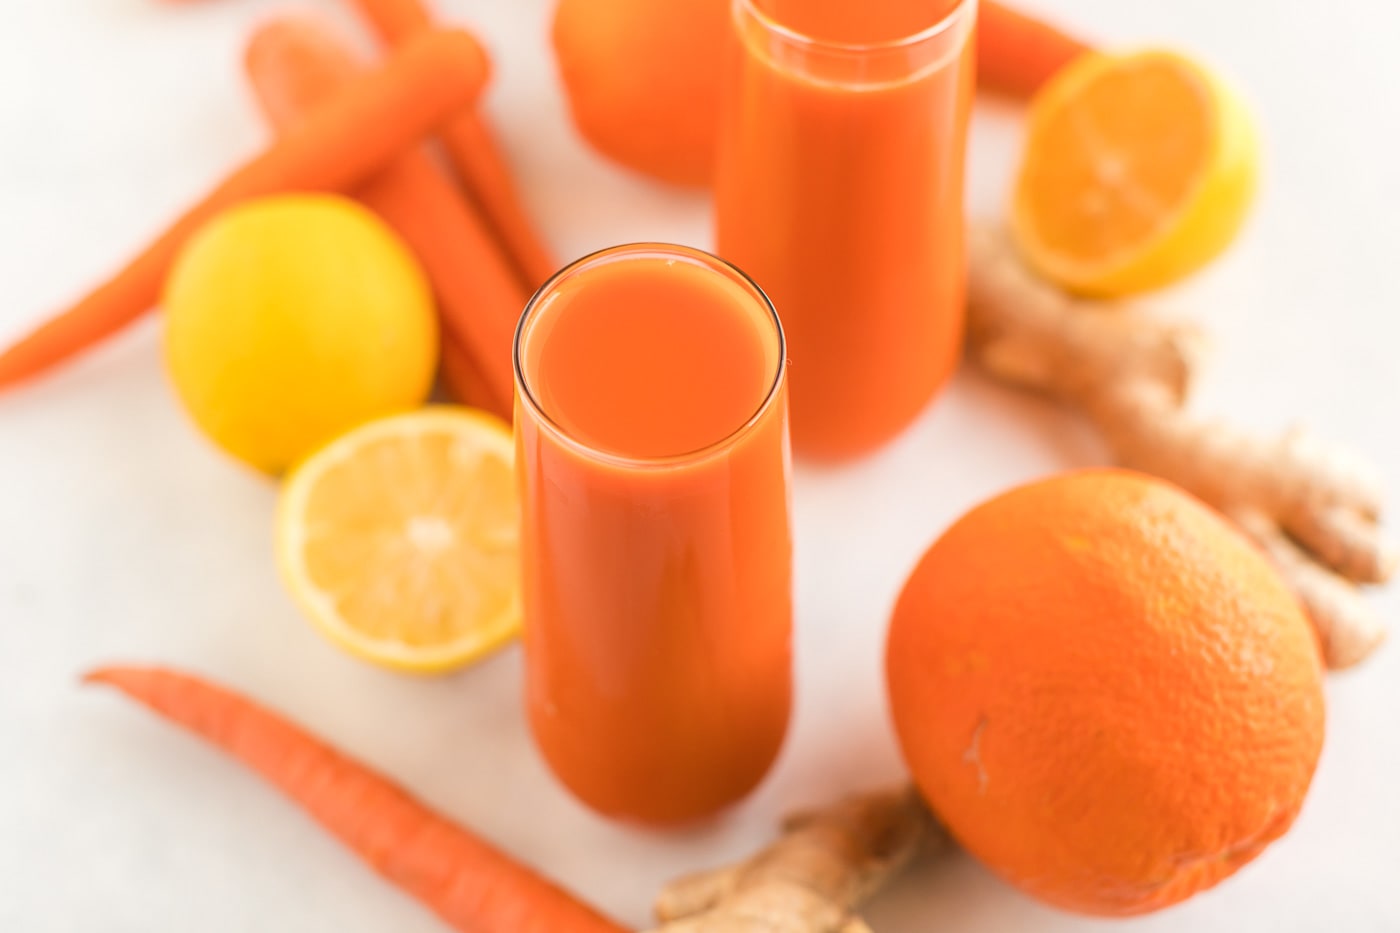 Carrot-Orange Juice